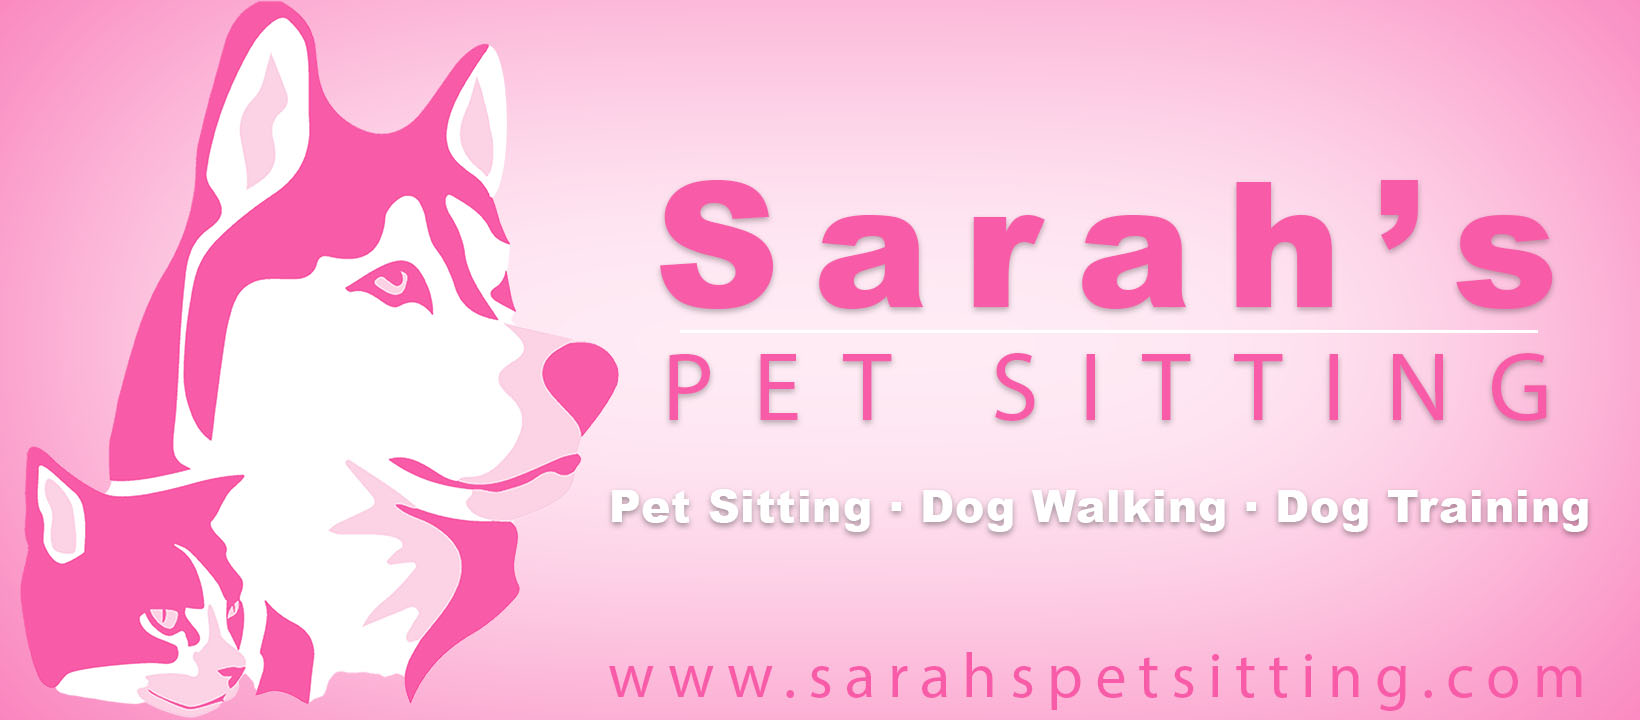 Sarah's Pet Sitting